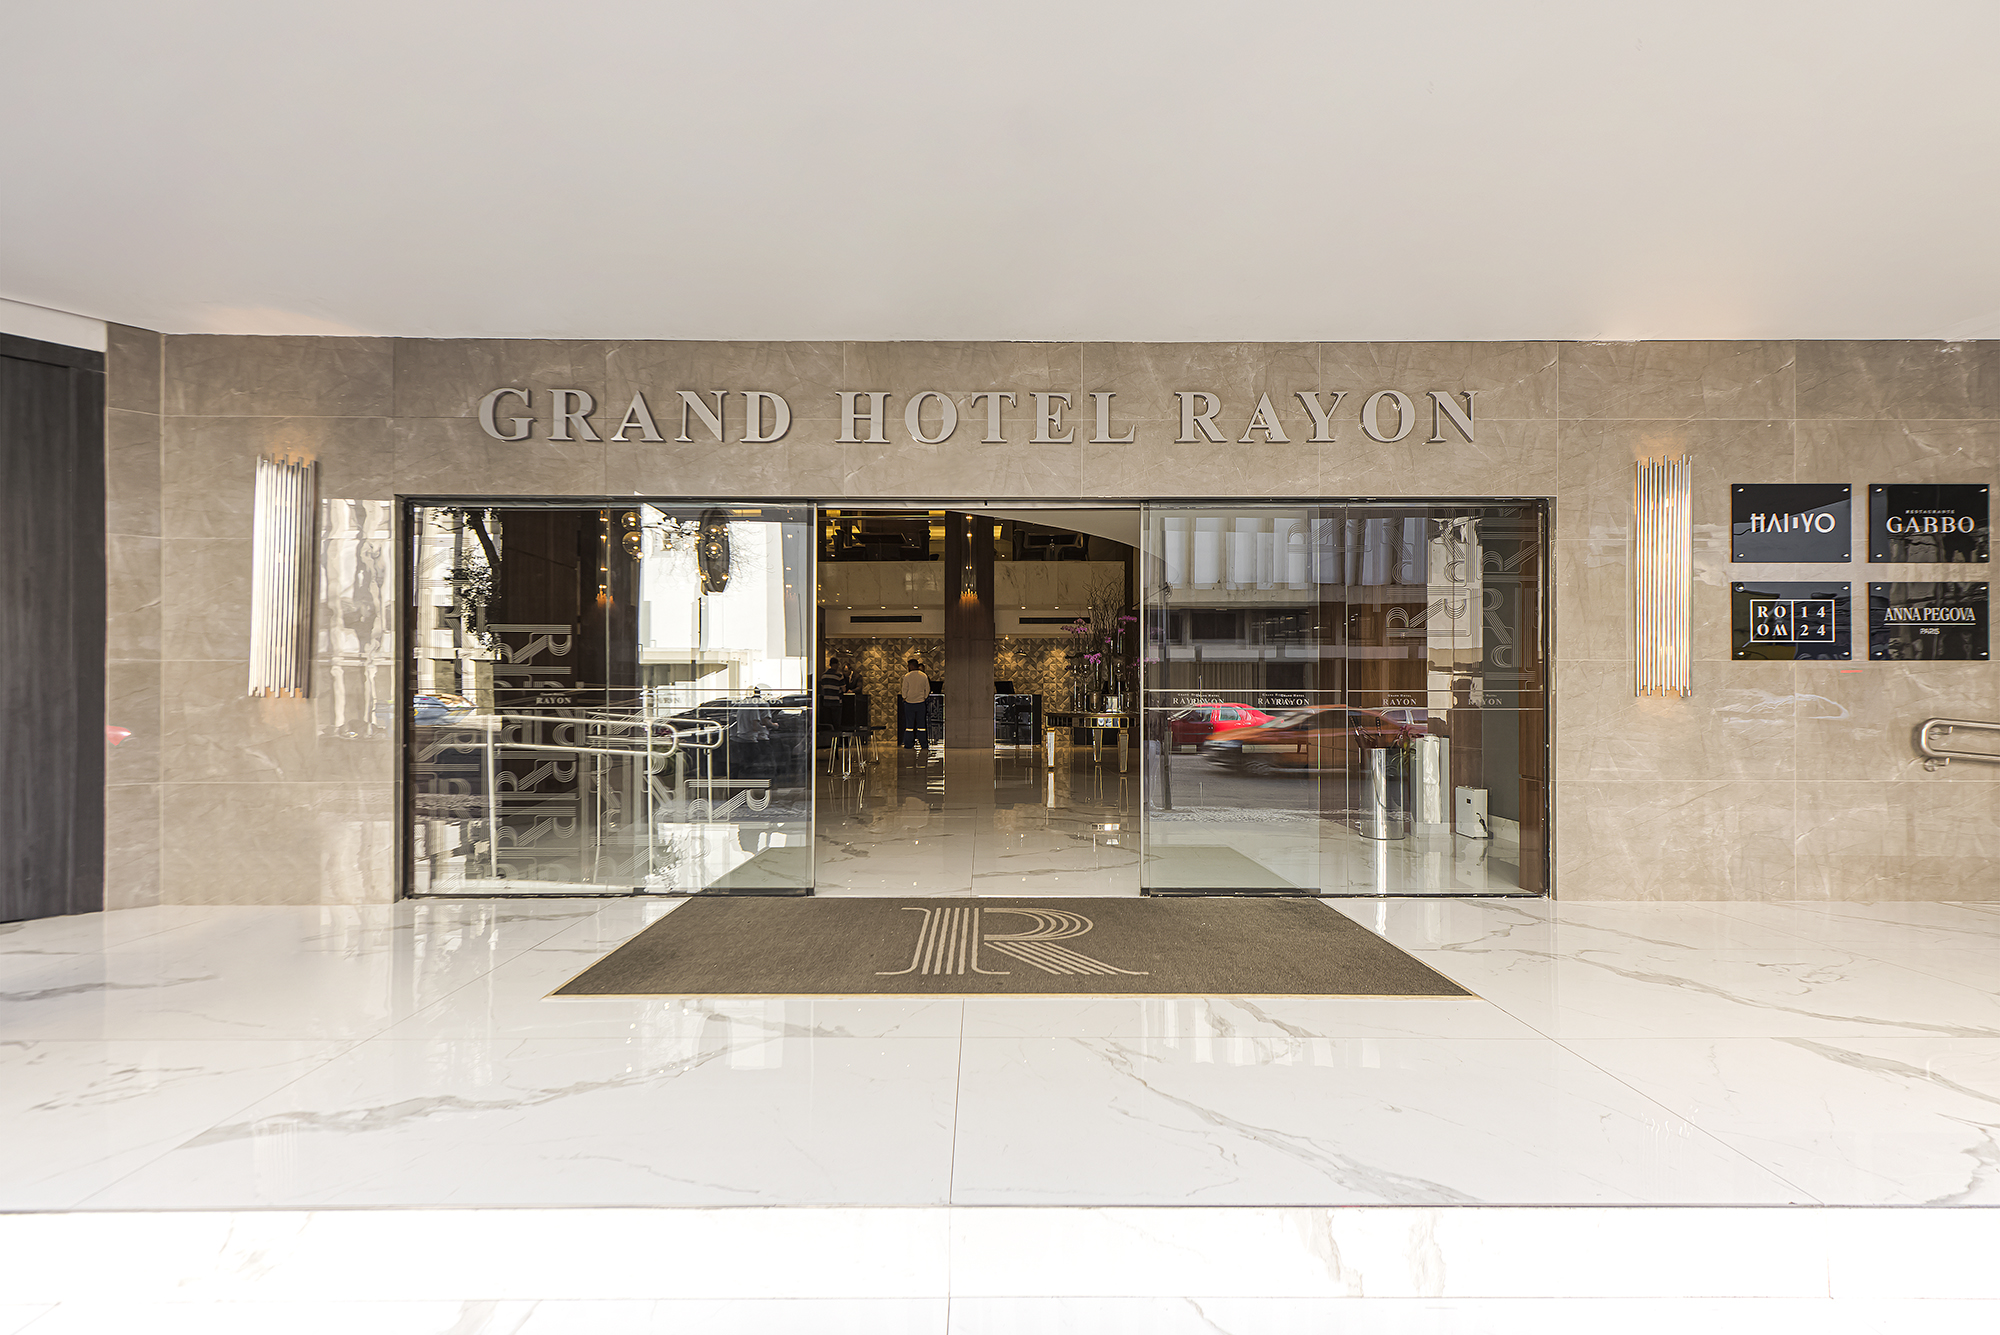 Grand Hotel Rayon oferece alta gastronomia, drinks e apresentações musicais durante o feriado